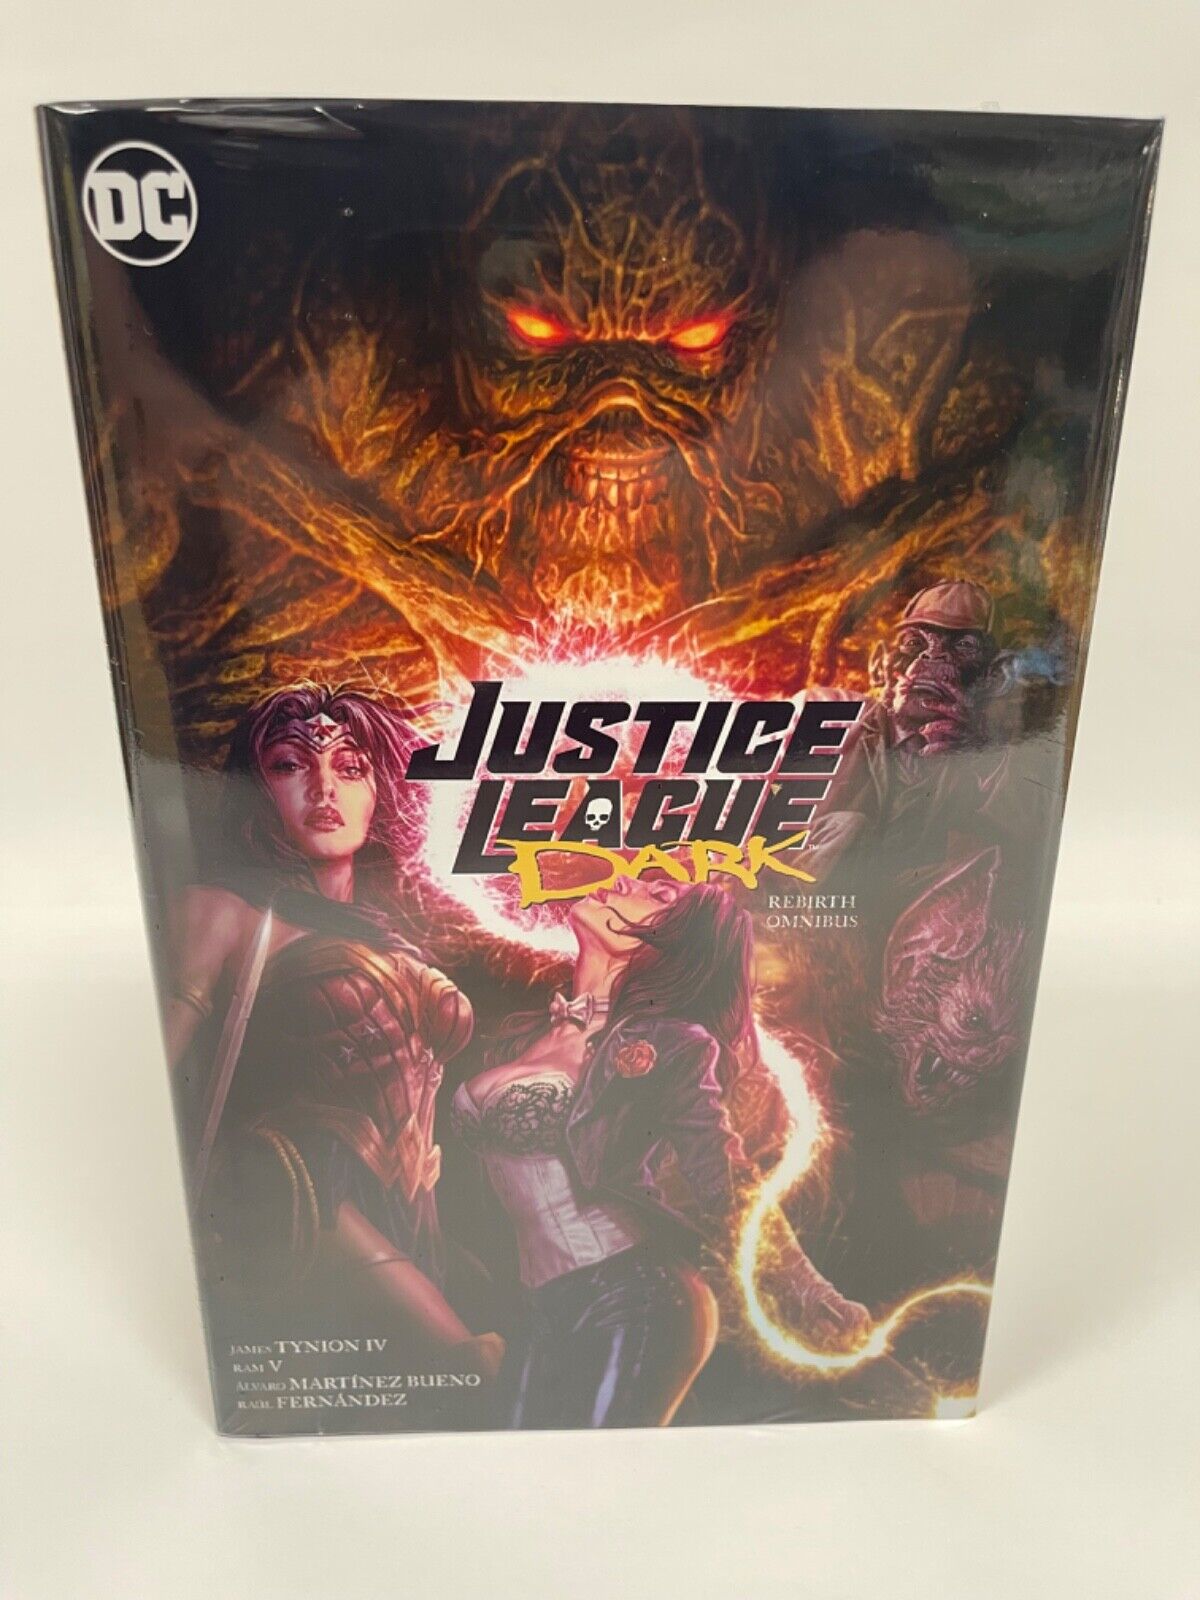 Justice League Dark Rebirth Omnibus New DC Comics HC Hardcover Sealed